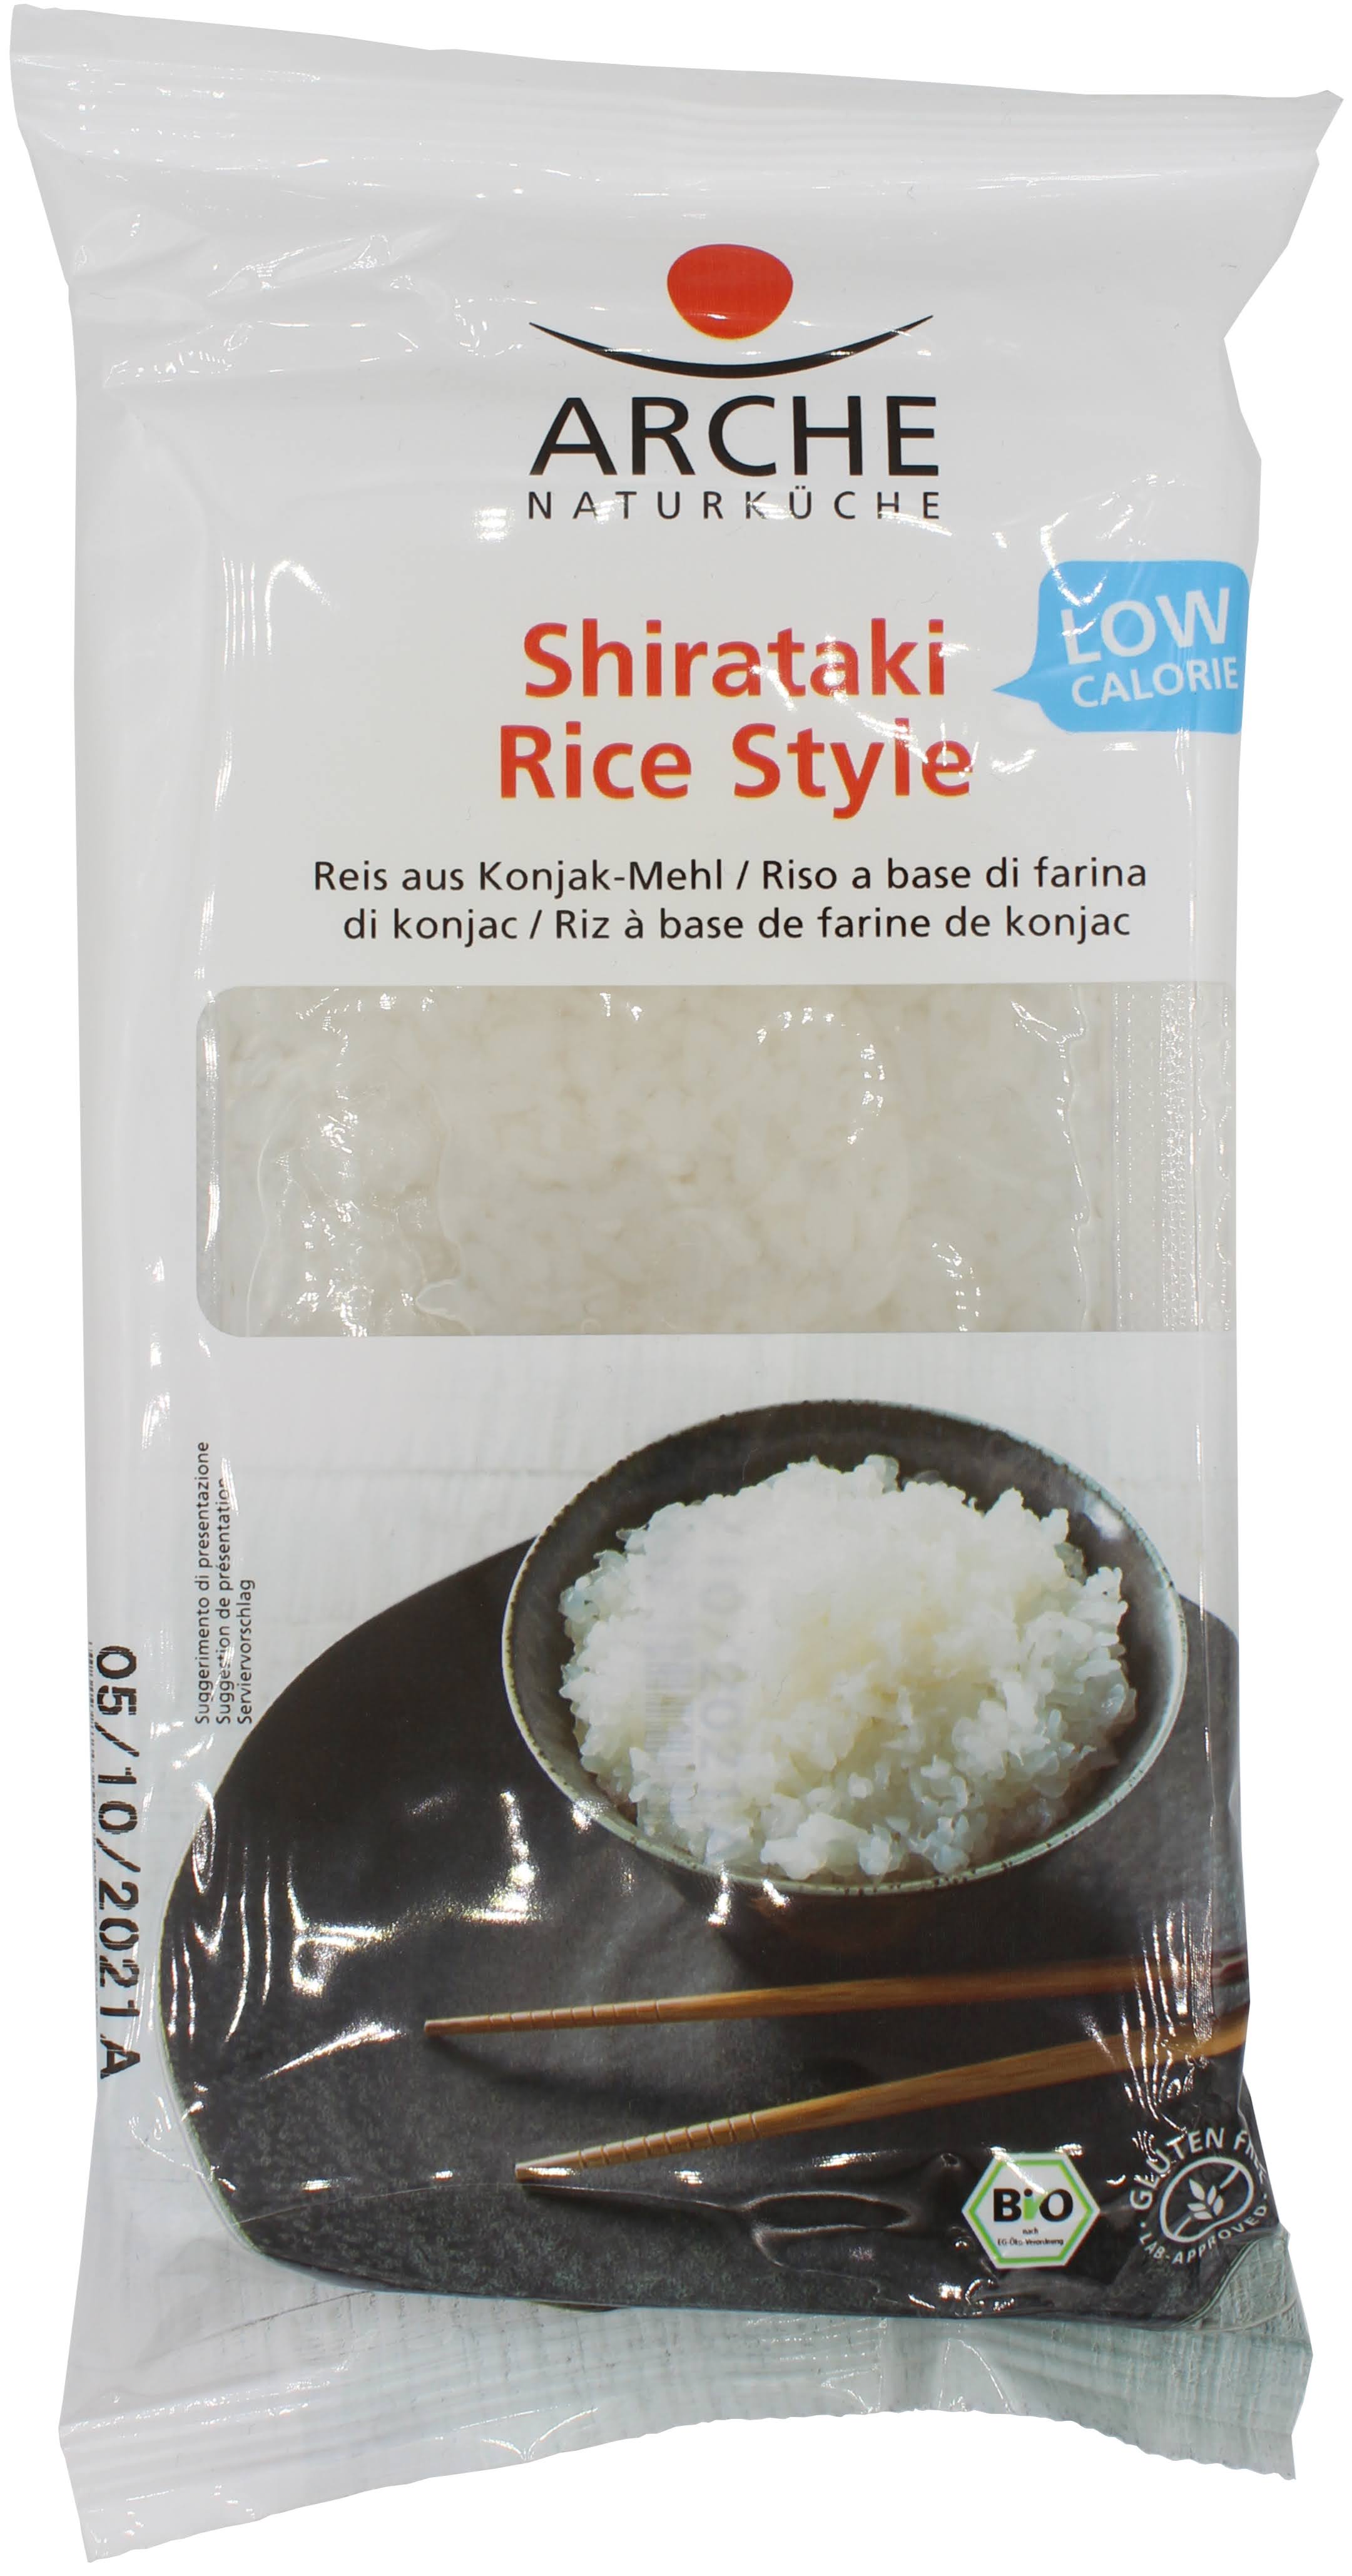 Shirataki Rice Style